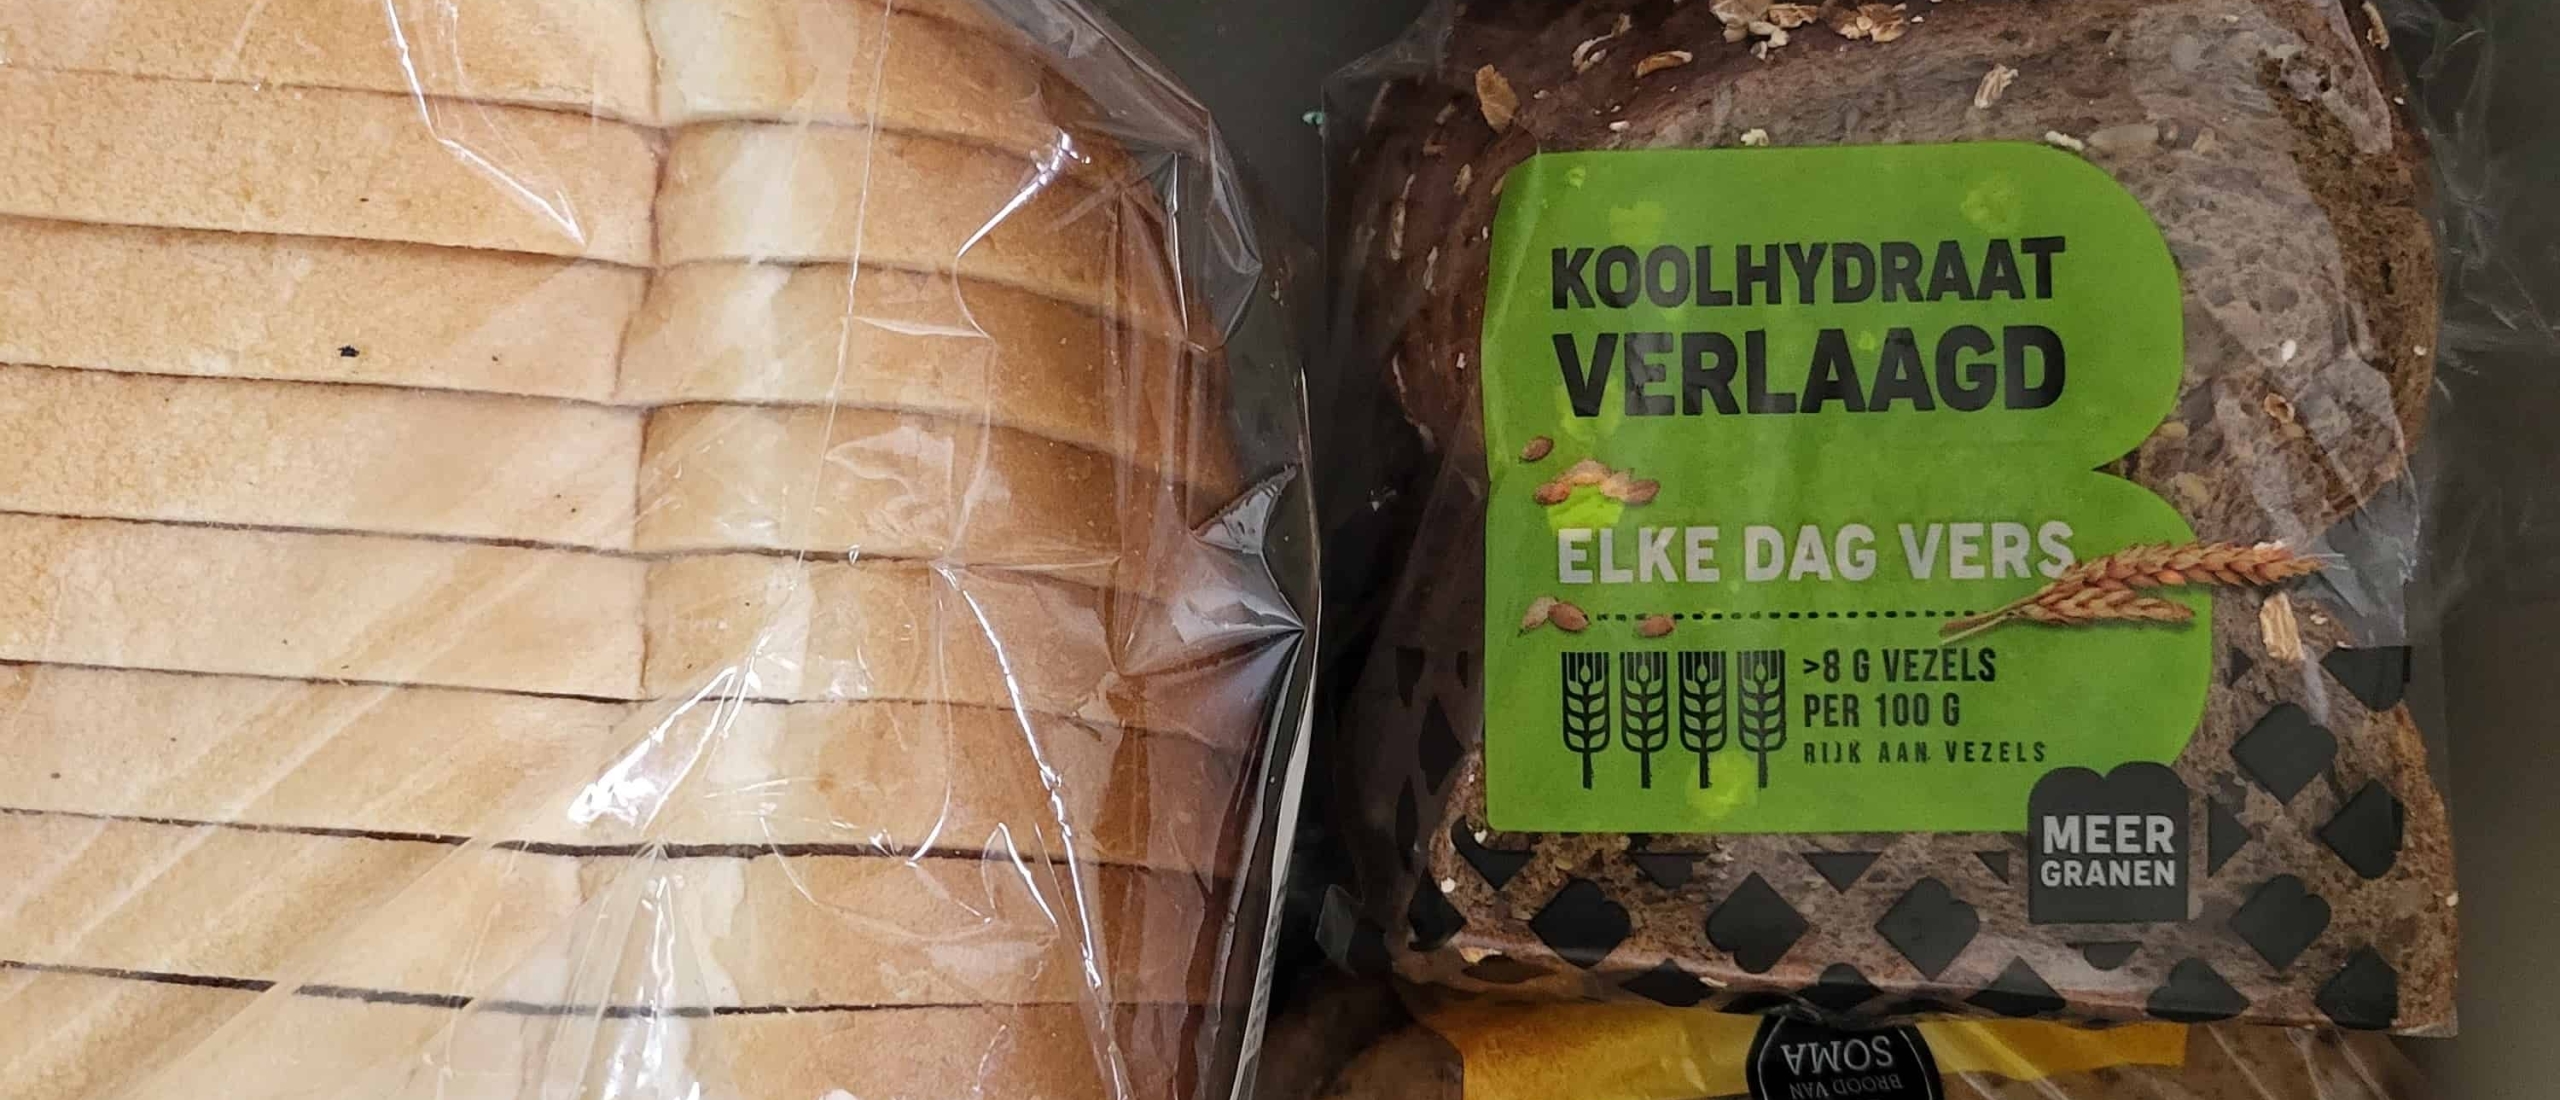 Koolhydraatarme broodvervangers als alternatief voor gewoon brood